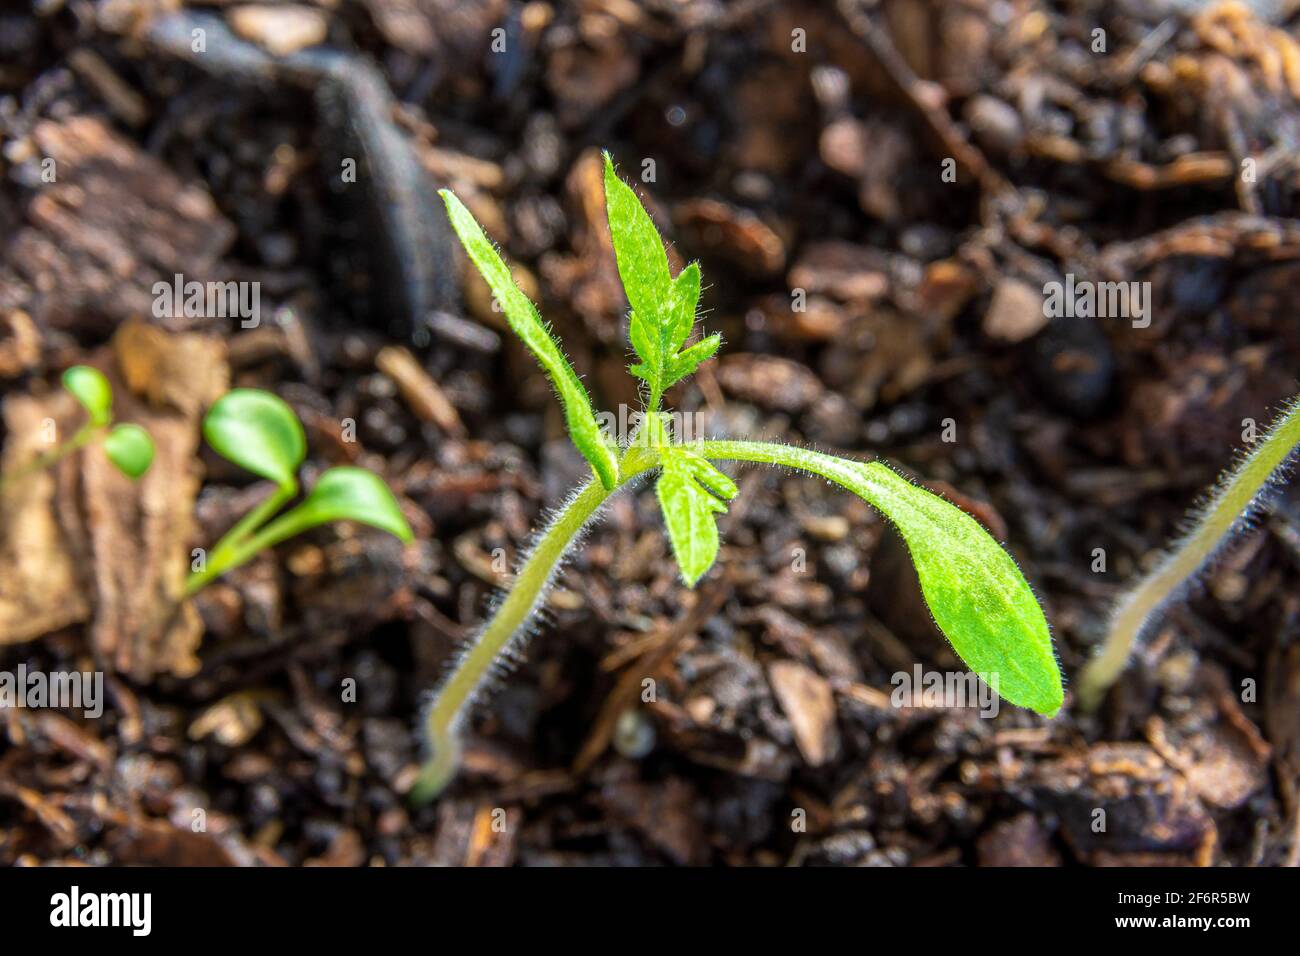 Les semis de tomates en mélange d'enrobage poussent à l'intérieur avec un éclairage artificiel supplémentaire. S'attend à des conditions favorables pour la plantation en terrain ouvert Banque D'Images